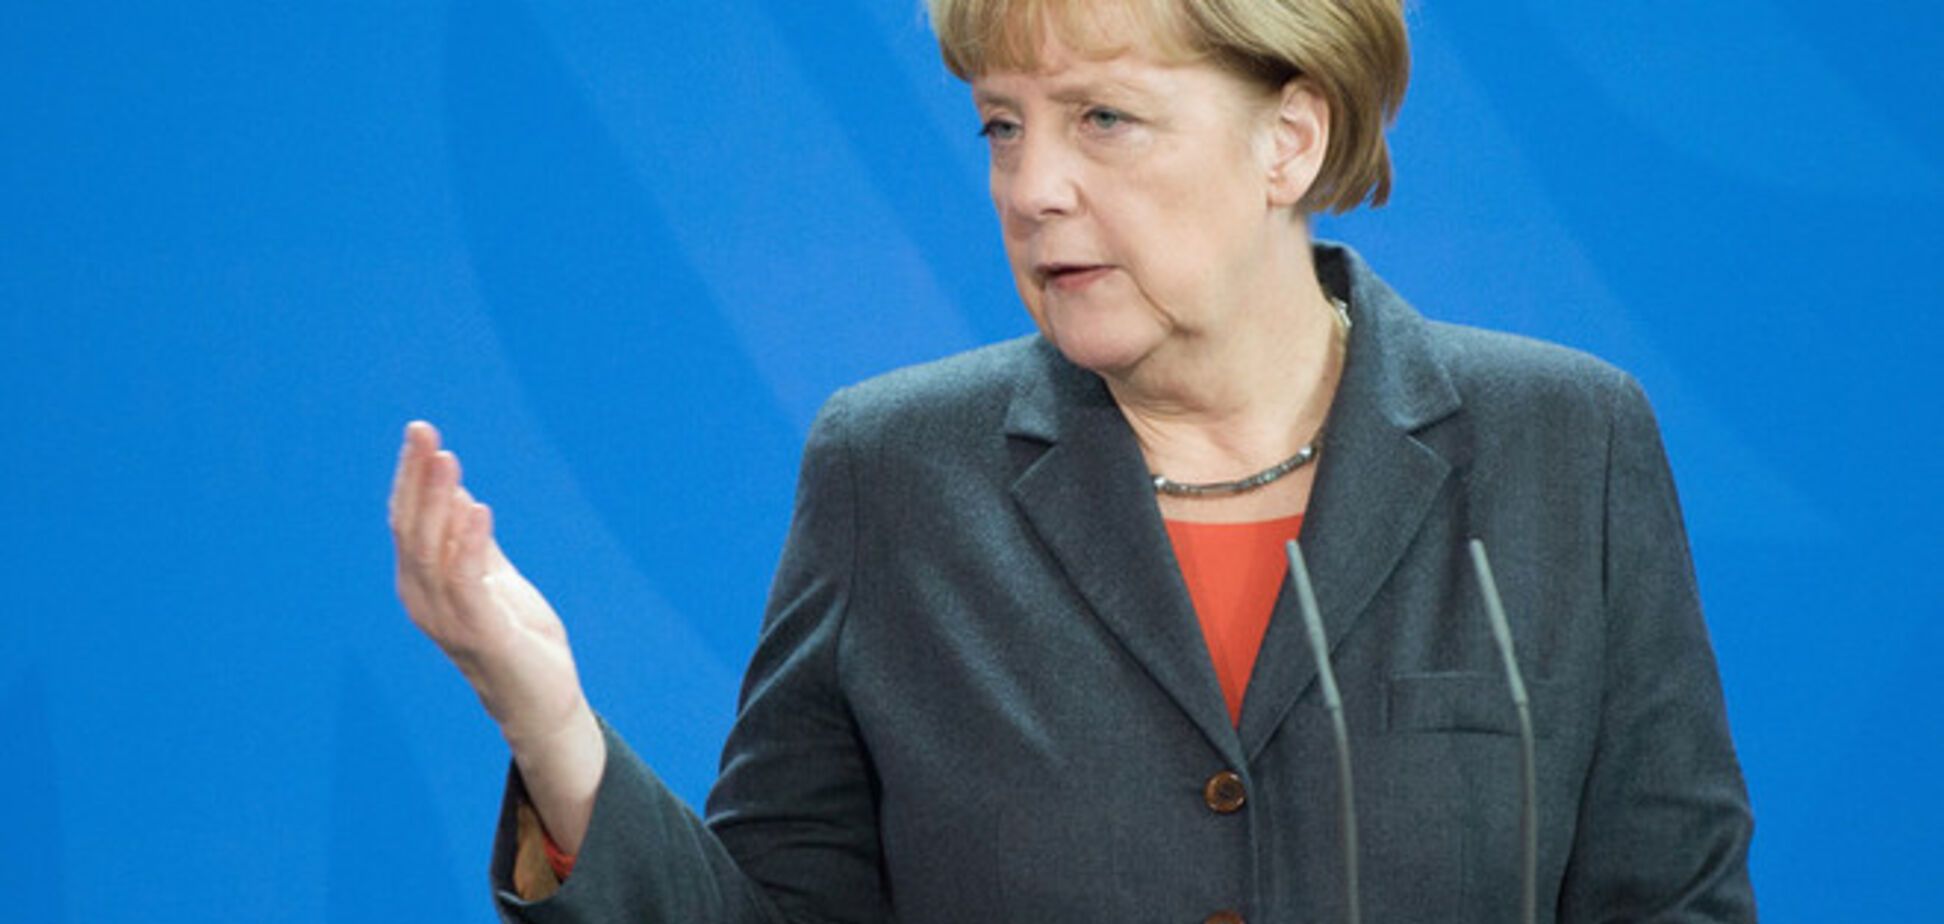  Меркель обвинила Россию во вмешательстве во внутренние дела Украины